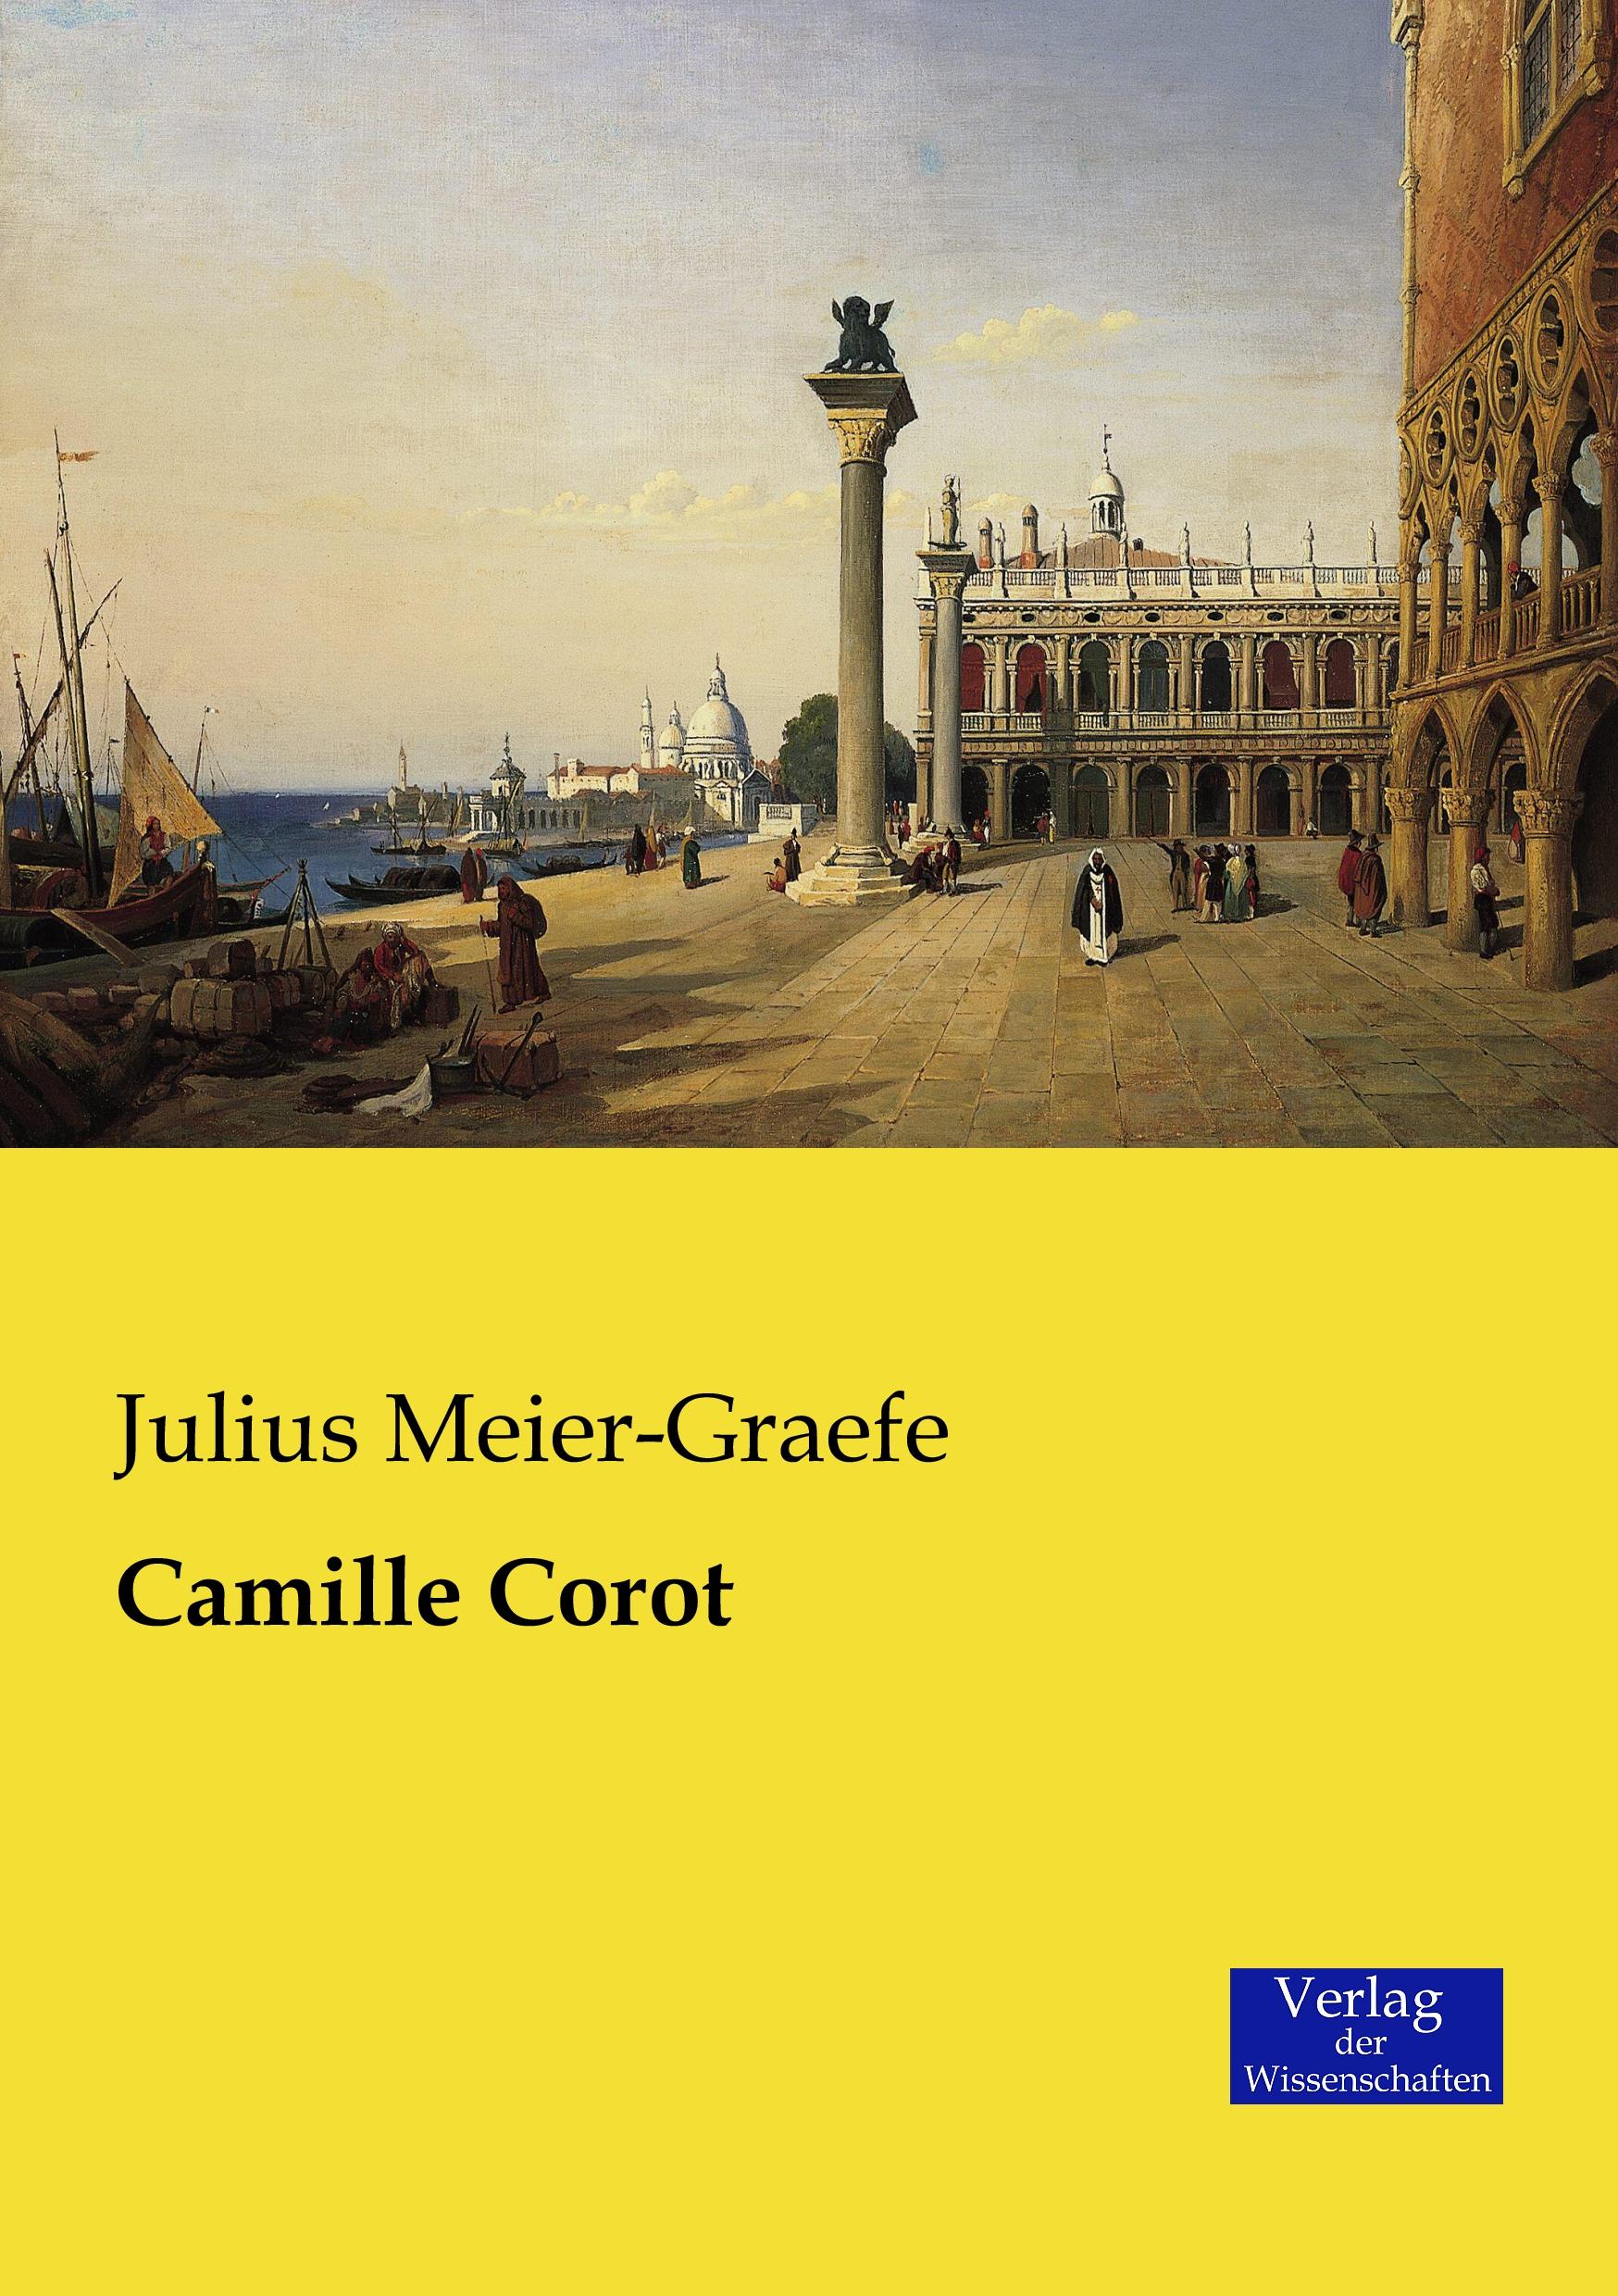 Camille Corot / Julius Meier-Graefe / Taschenbuch / Paperback / 196 S. / Deutsch / 2019 / Vero Verlag / EAN 9783957004178 - Meier-Graefe, Julius